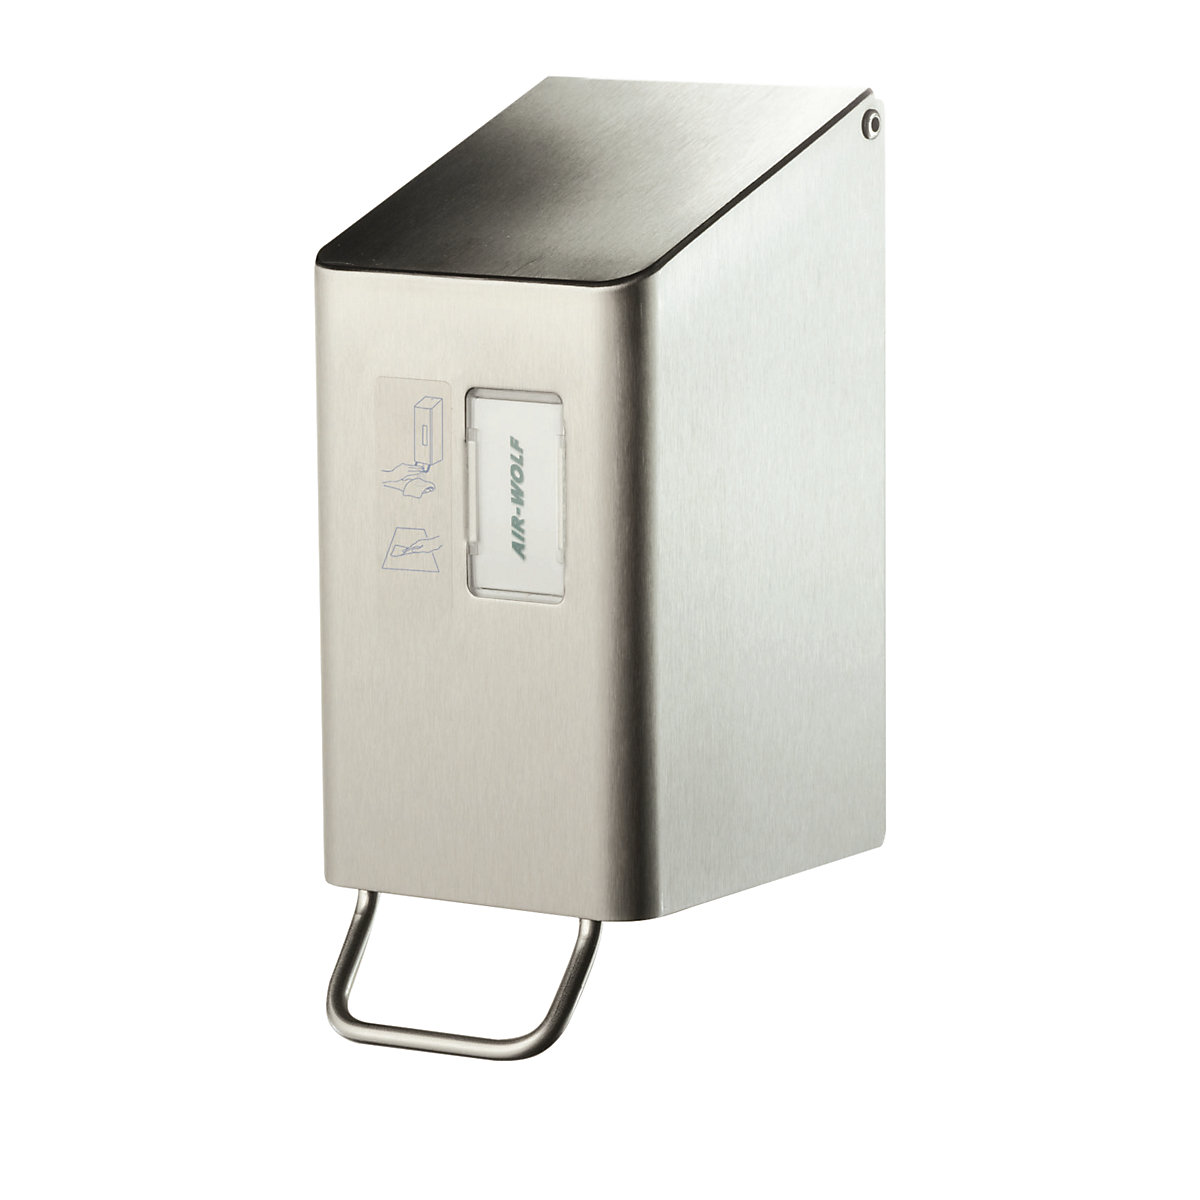 Dosatore per disinfettante per sedile per WC – AIR-WOLF, per 250 ml, acciaio inox spazzolato-2